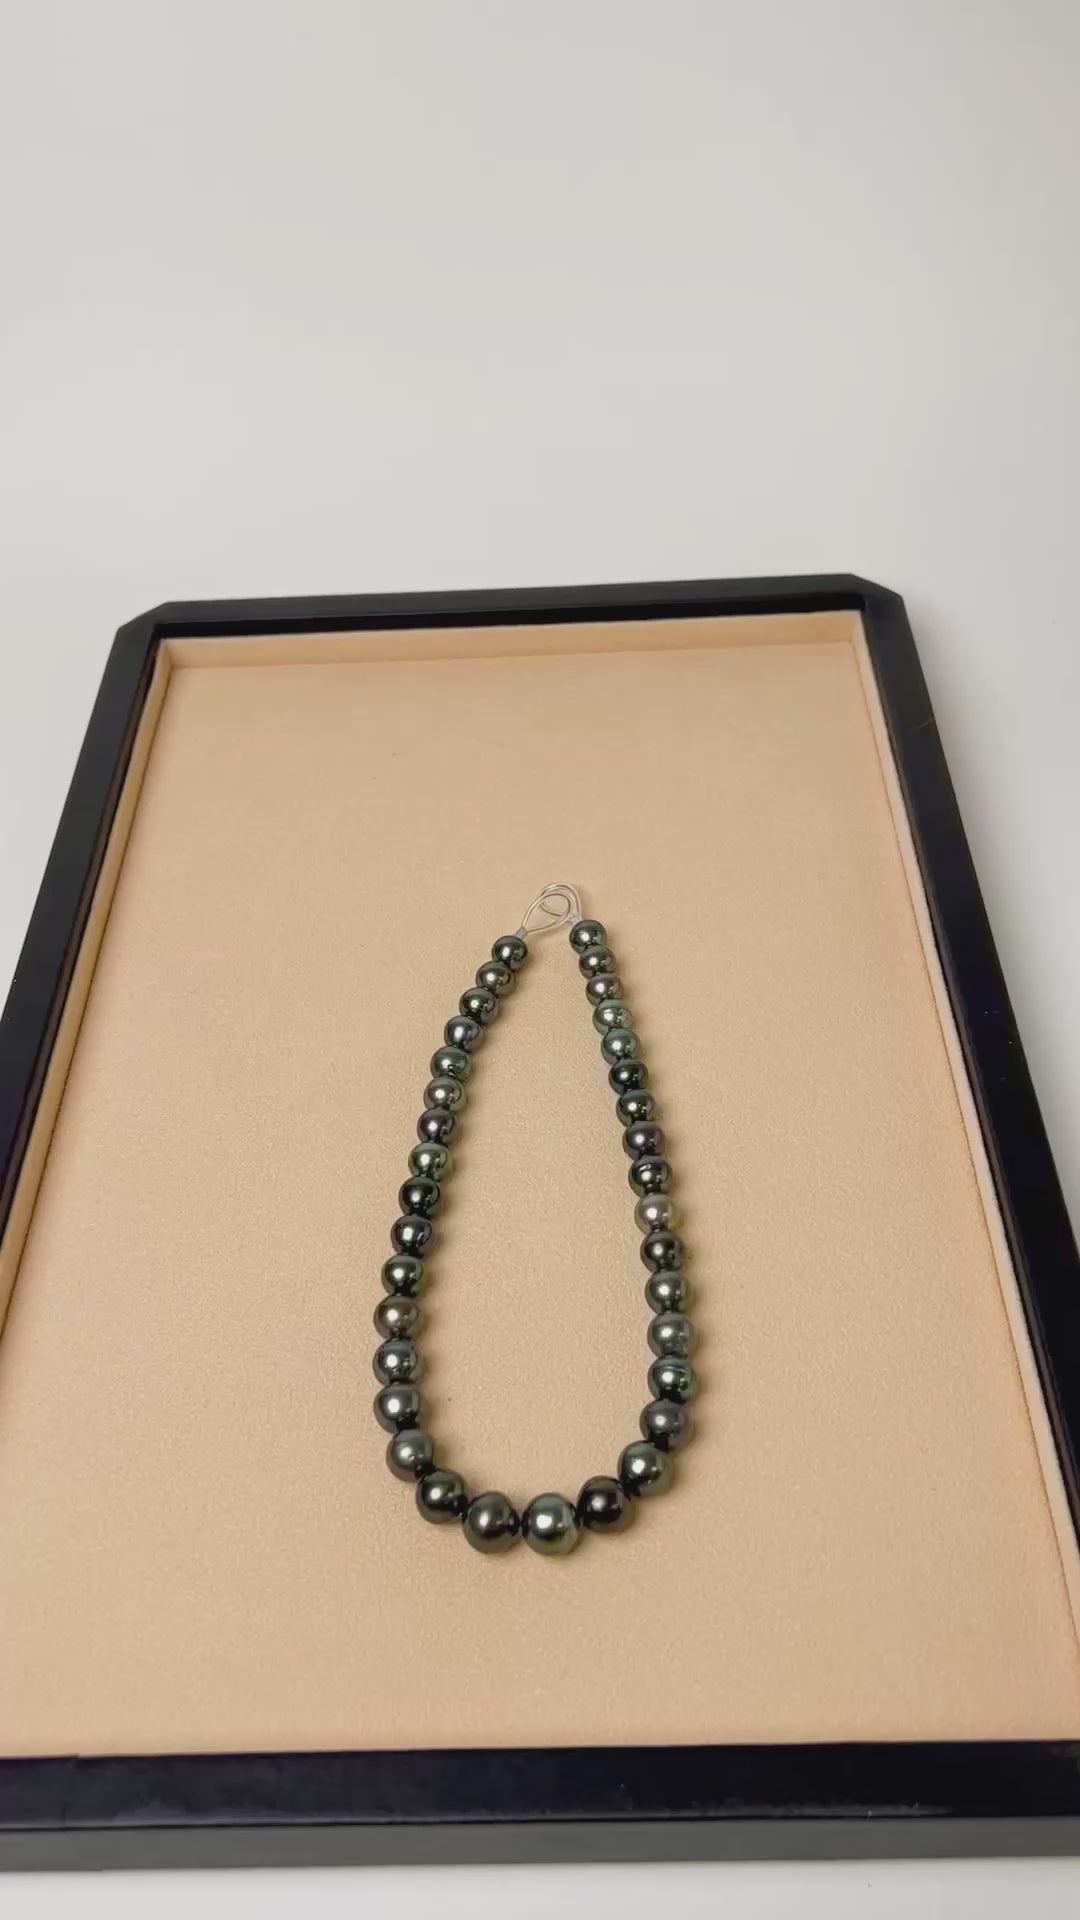 Collar de perlas cultivadas Tahití de 11,8 a 13 mm barrocas redondeadas